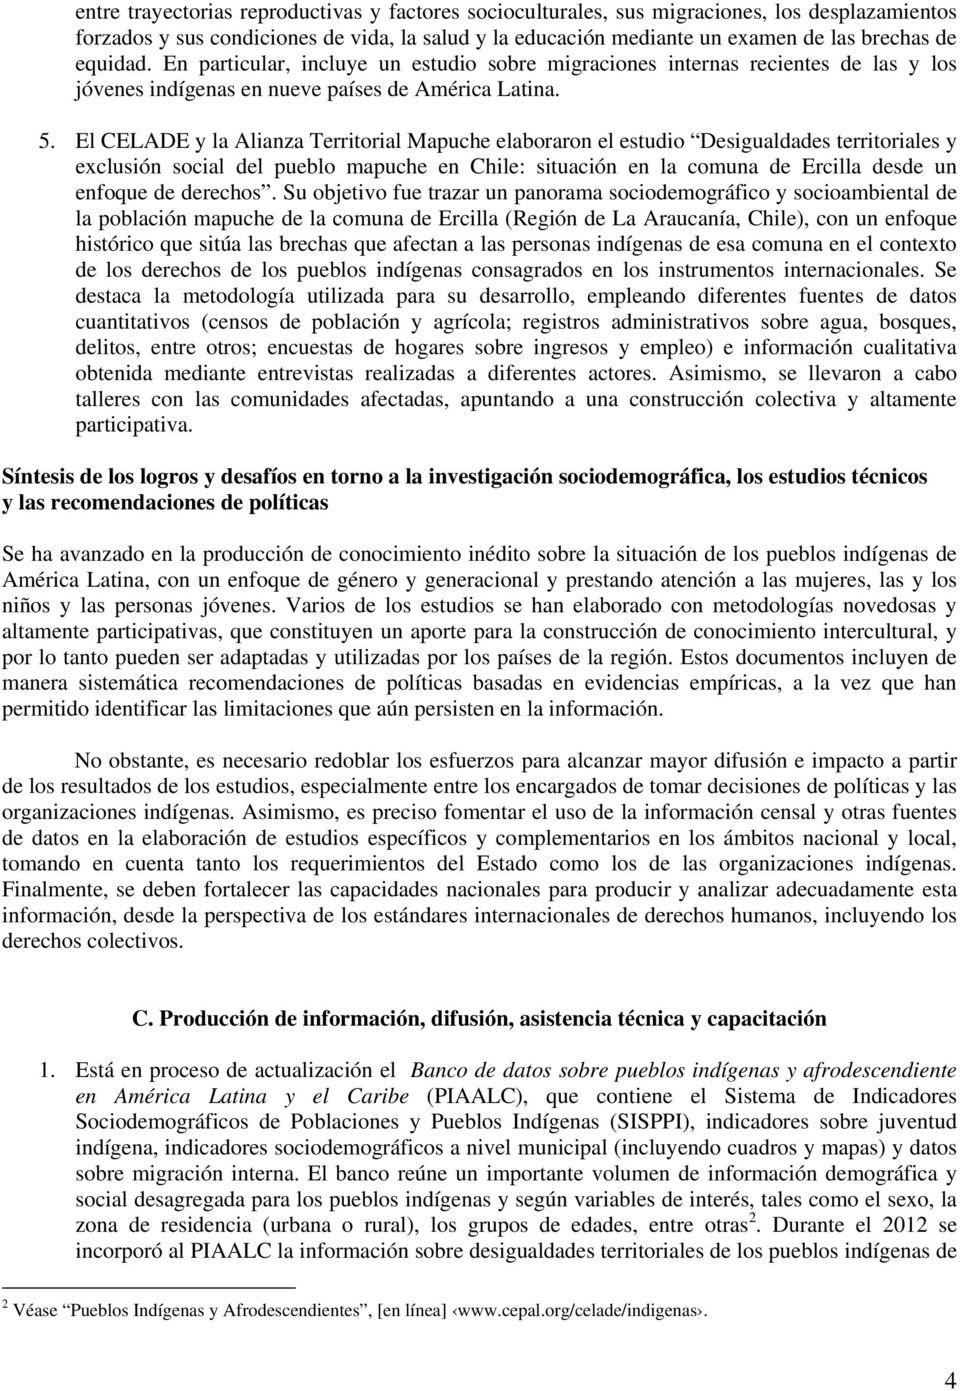 El CELADE y la Alianza Territorial Mapuche elaboraron el estudio Desigualdades territoriales y exclusión social del pueblo mapuche en Chile: situación en la comuna de Ercilla desde un enfoque de